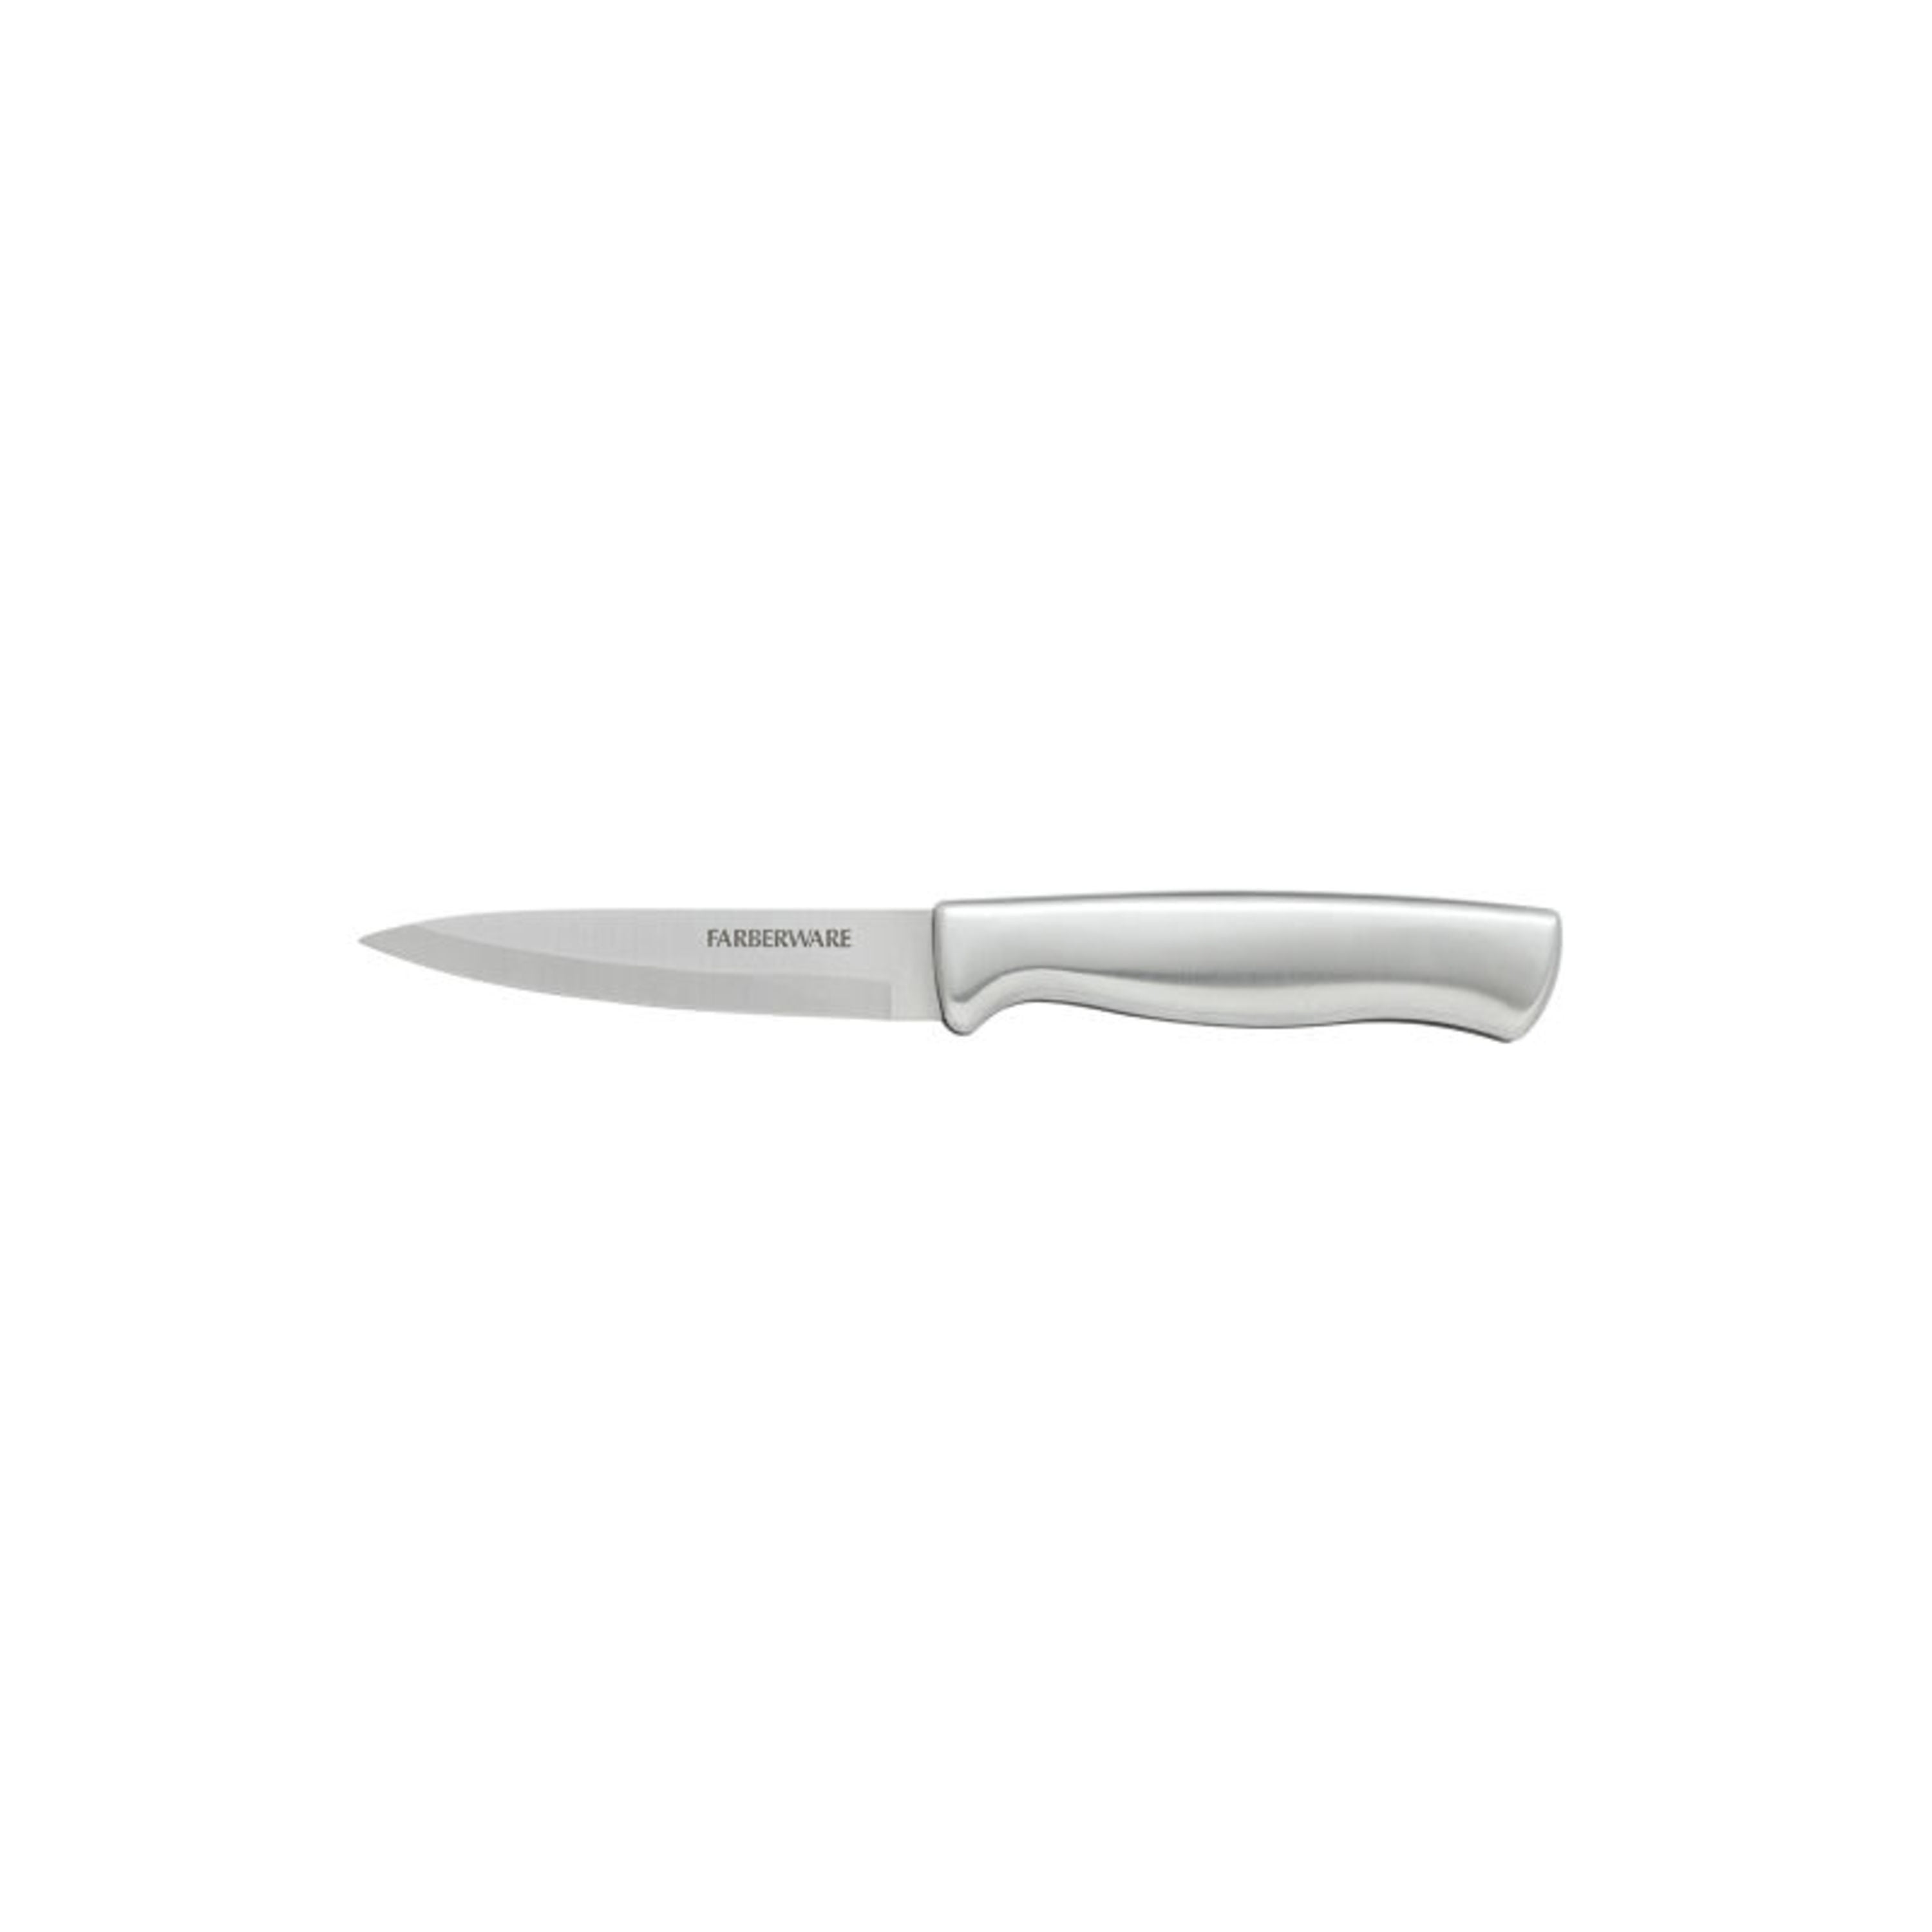 Farberware Stamped Stainless Steel Cutlery Set, 12 pc - Kroger